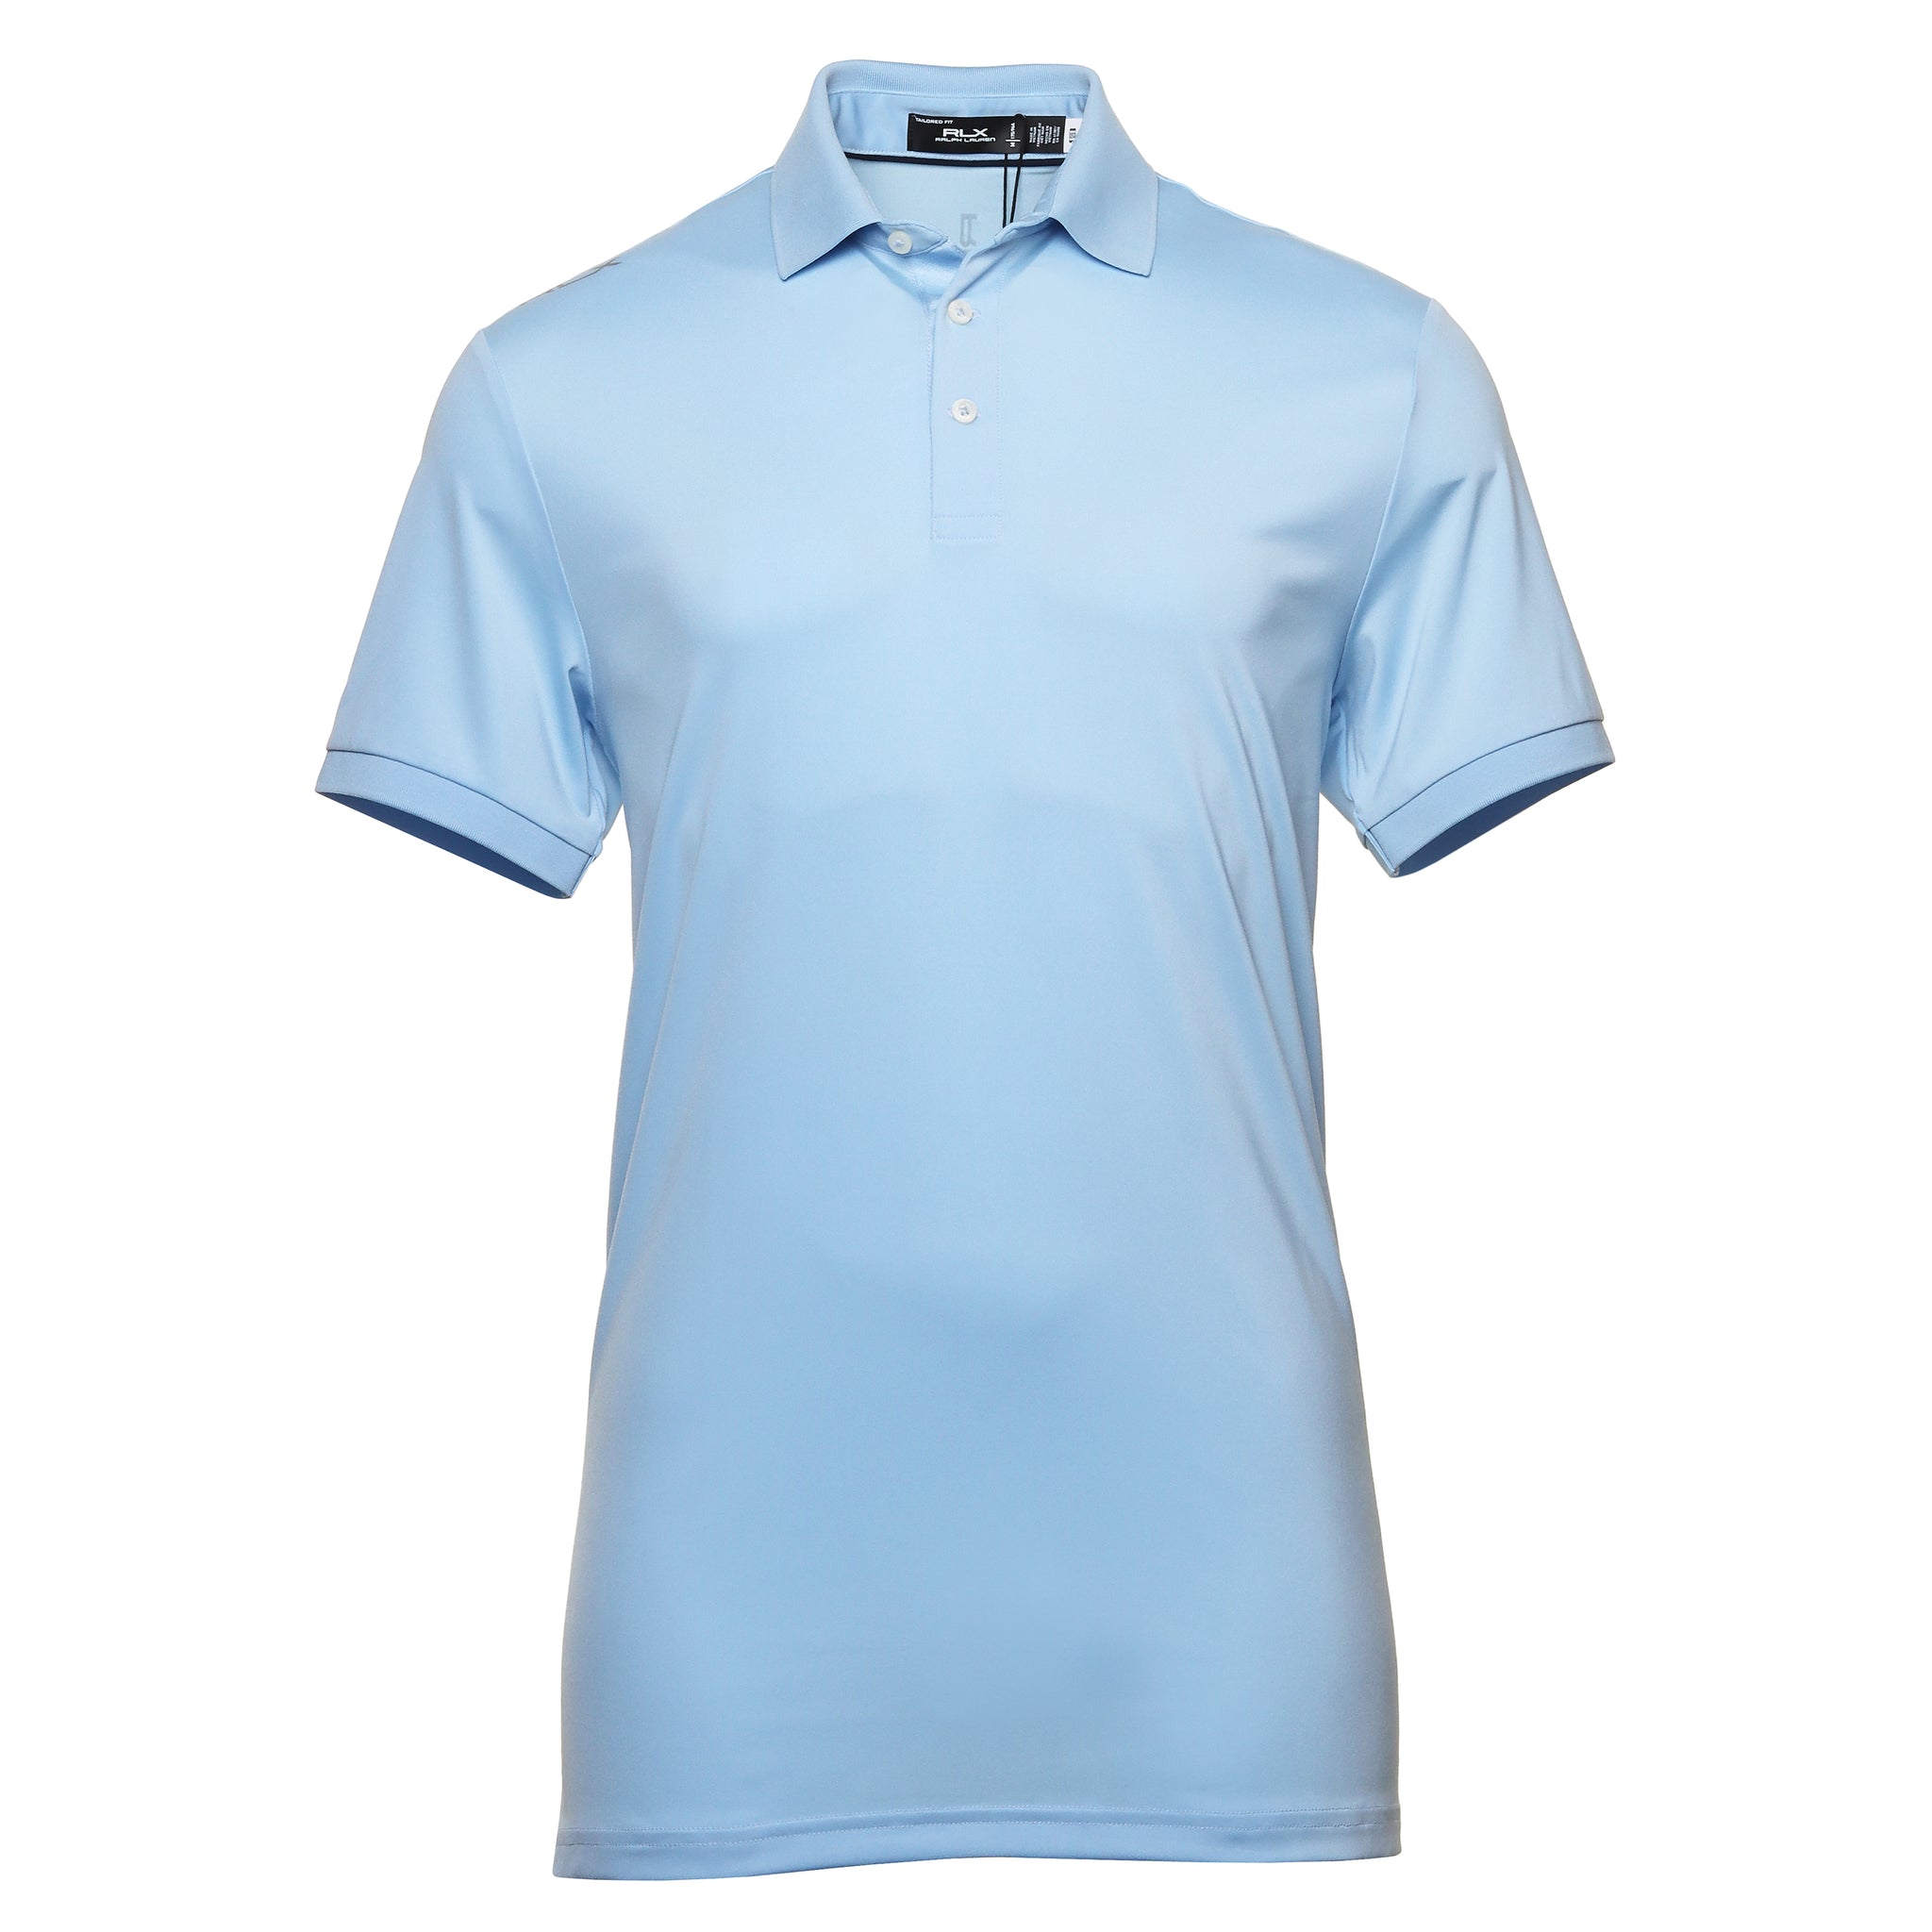 rlx-ralph-lauren-jersey-polo-shirt-785936628-office-blue-010